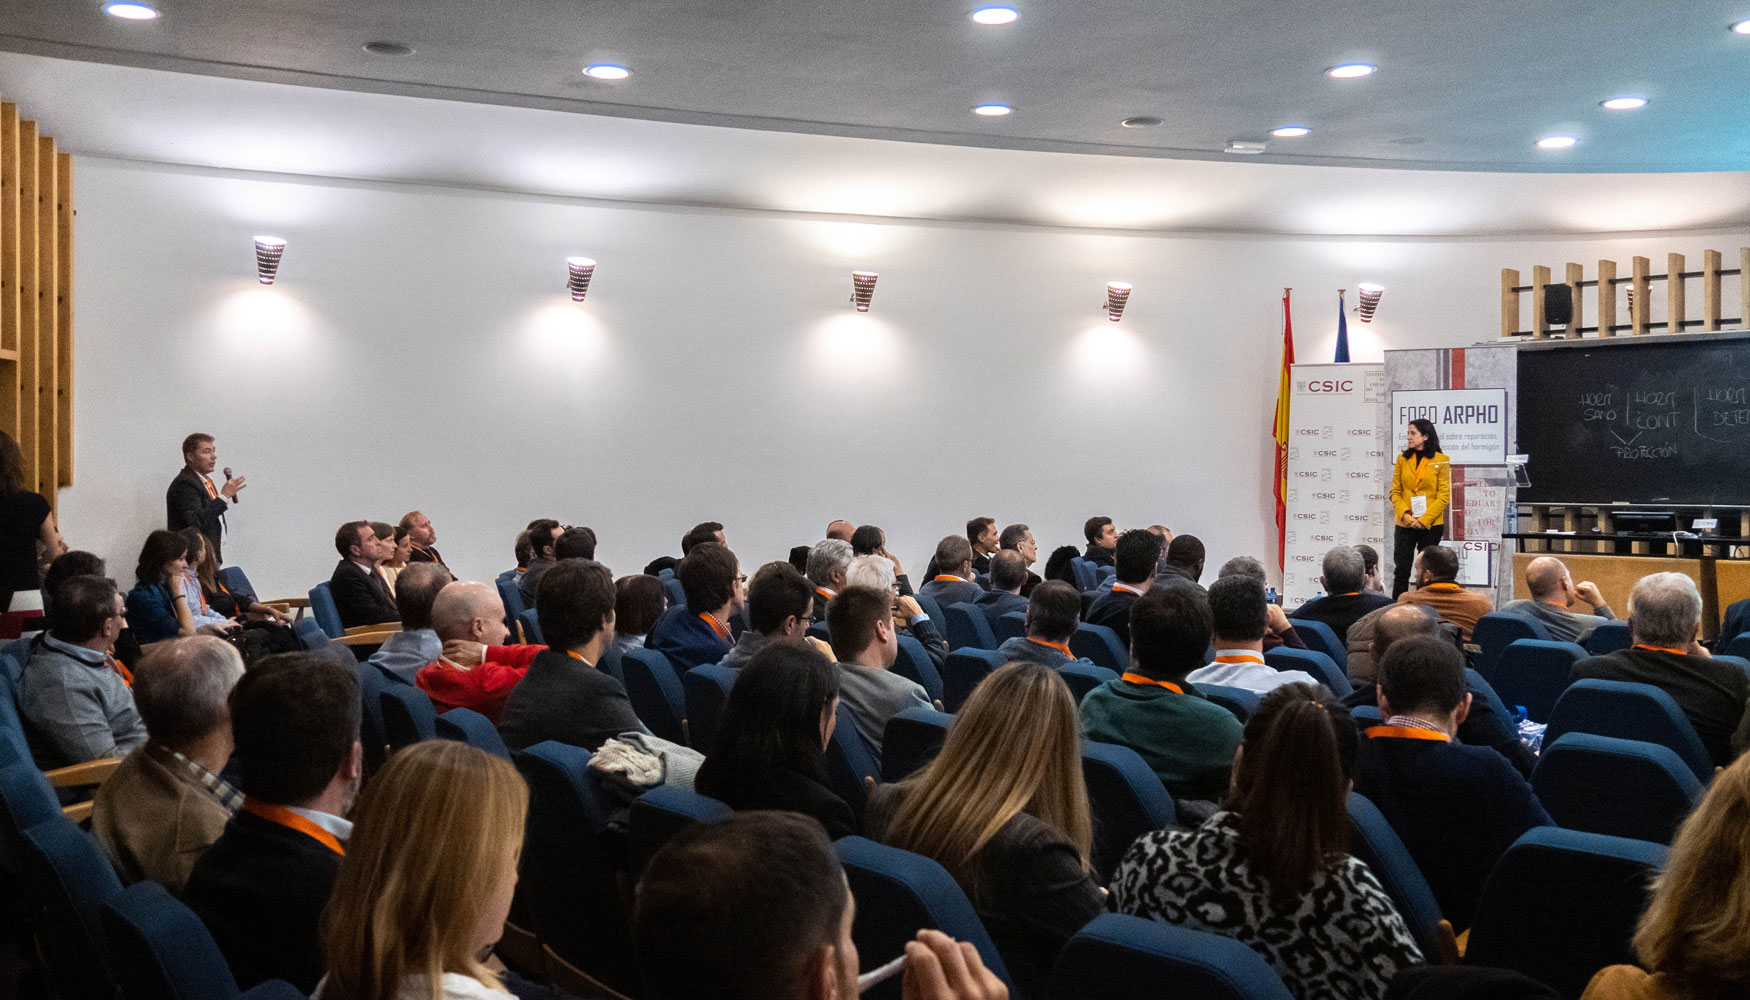 El Foro Arpho 2019 incluy un amplio programa de conferencias